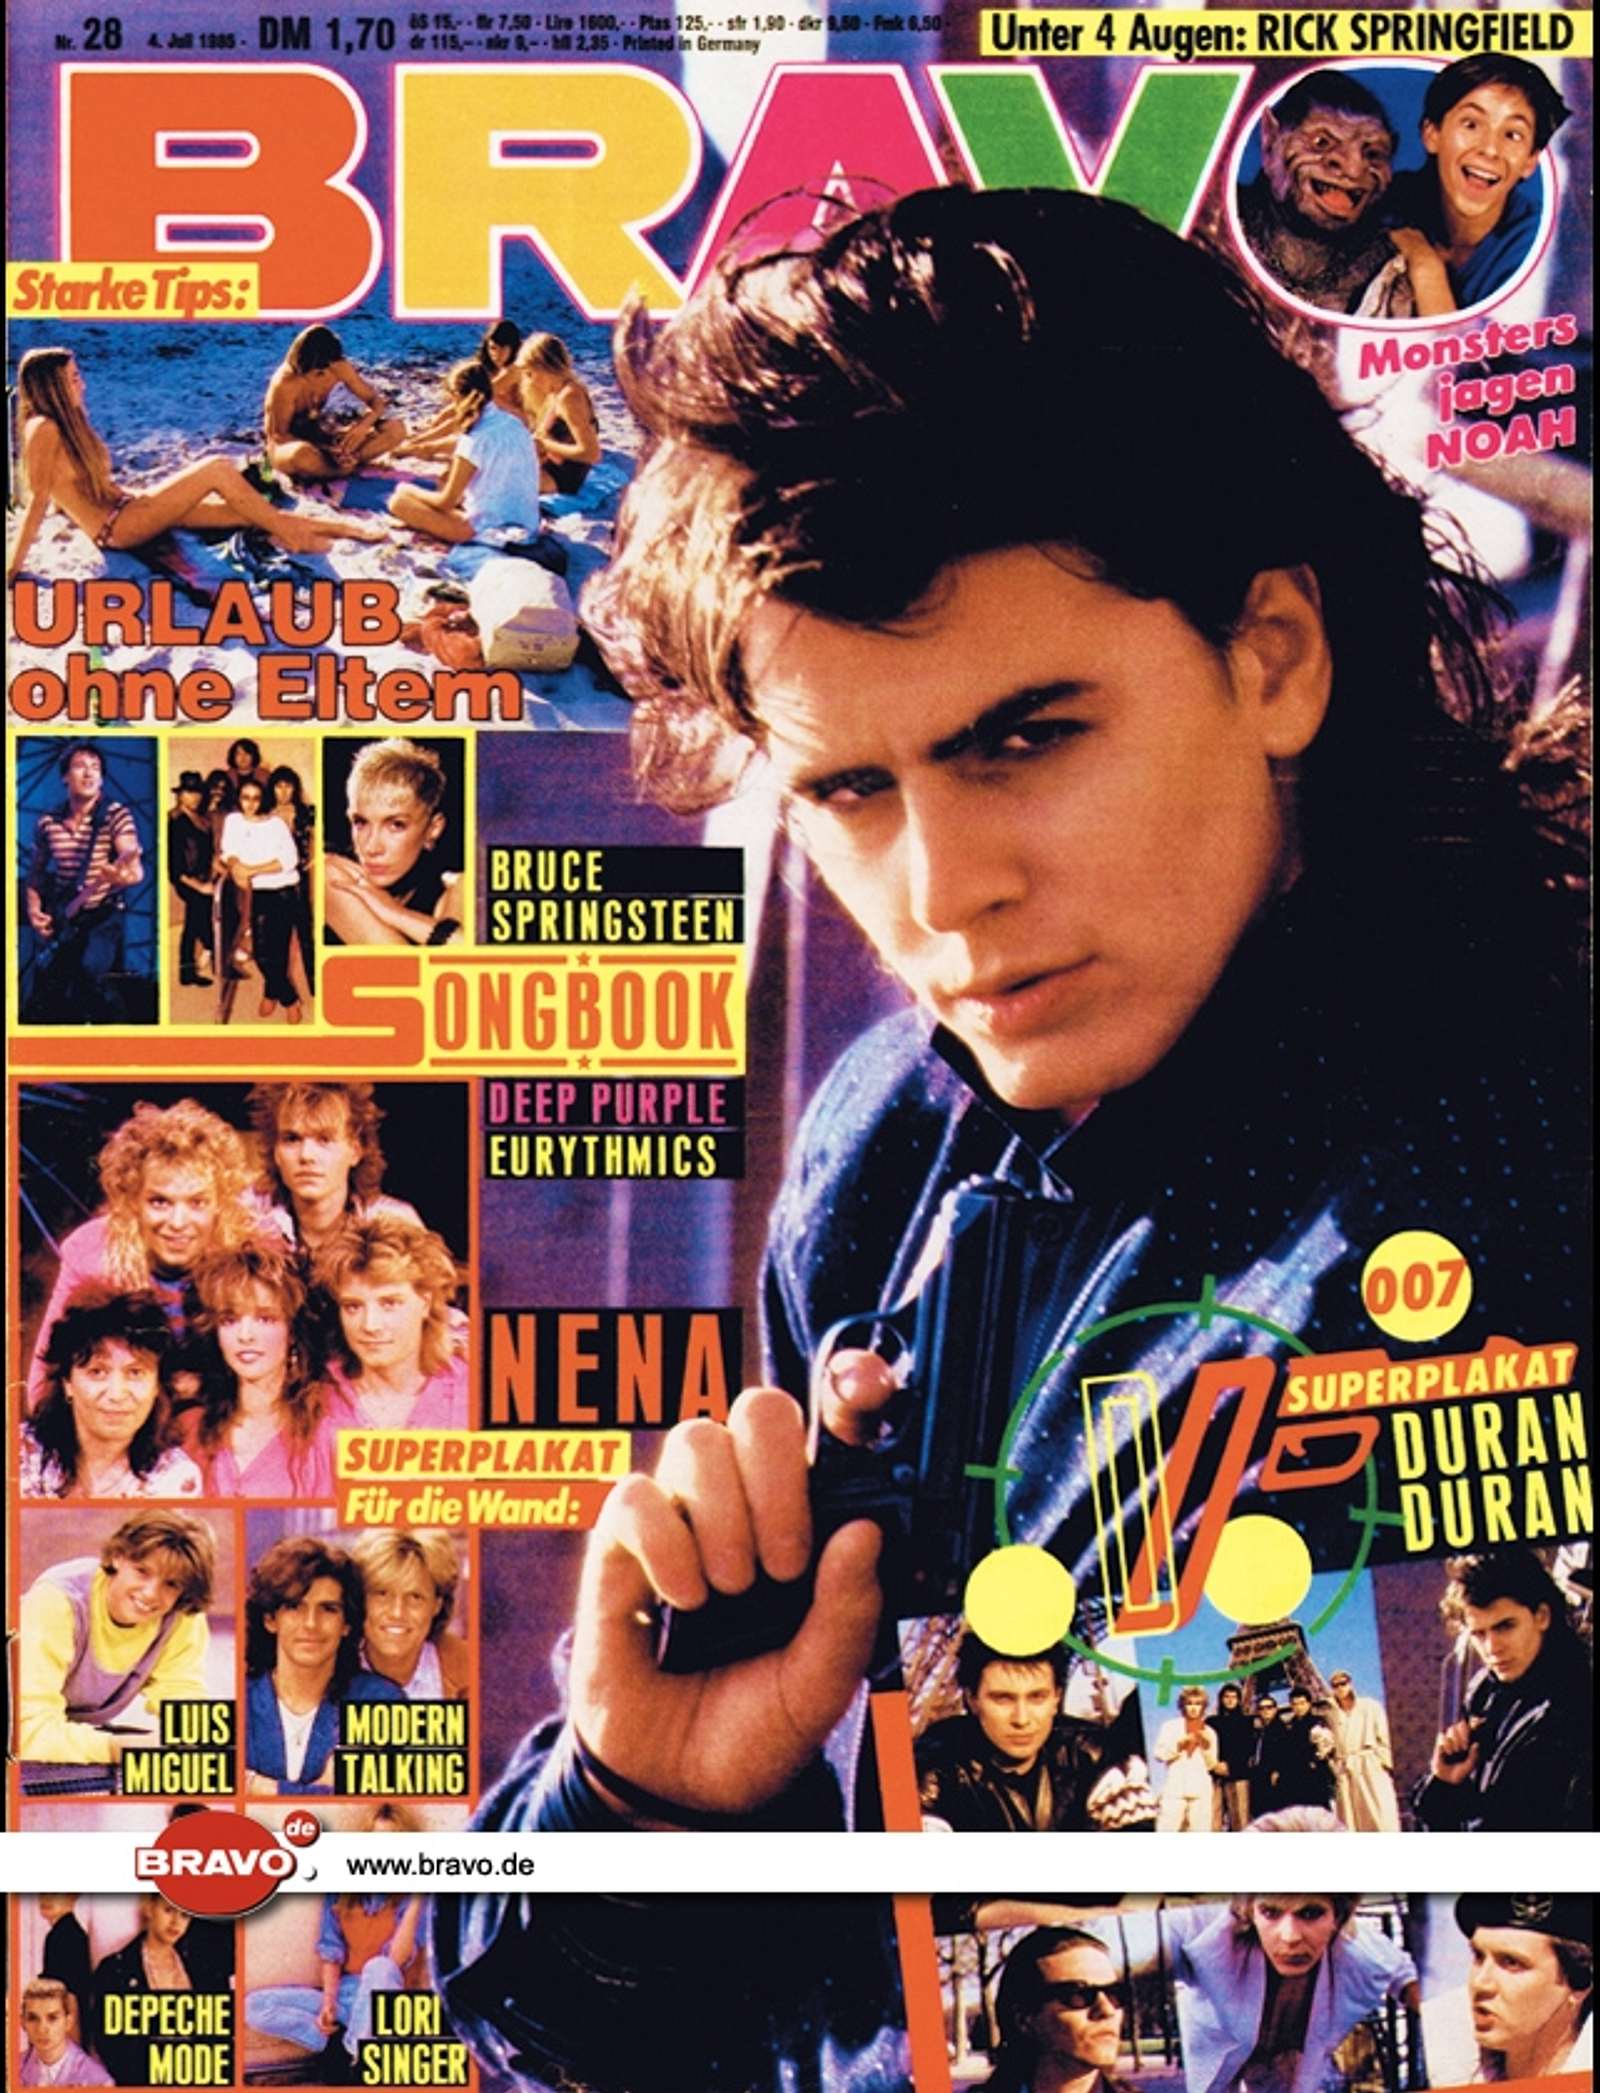 Duran Duran 1985 in Bravo Magazine